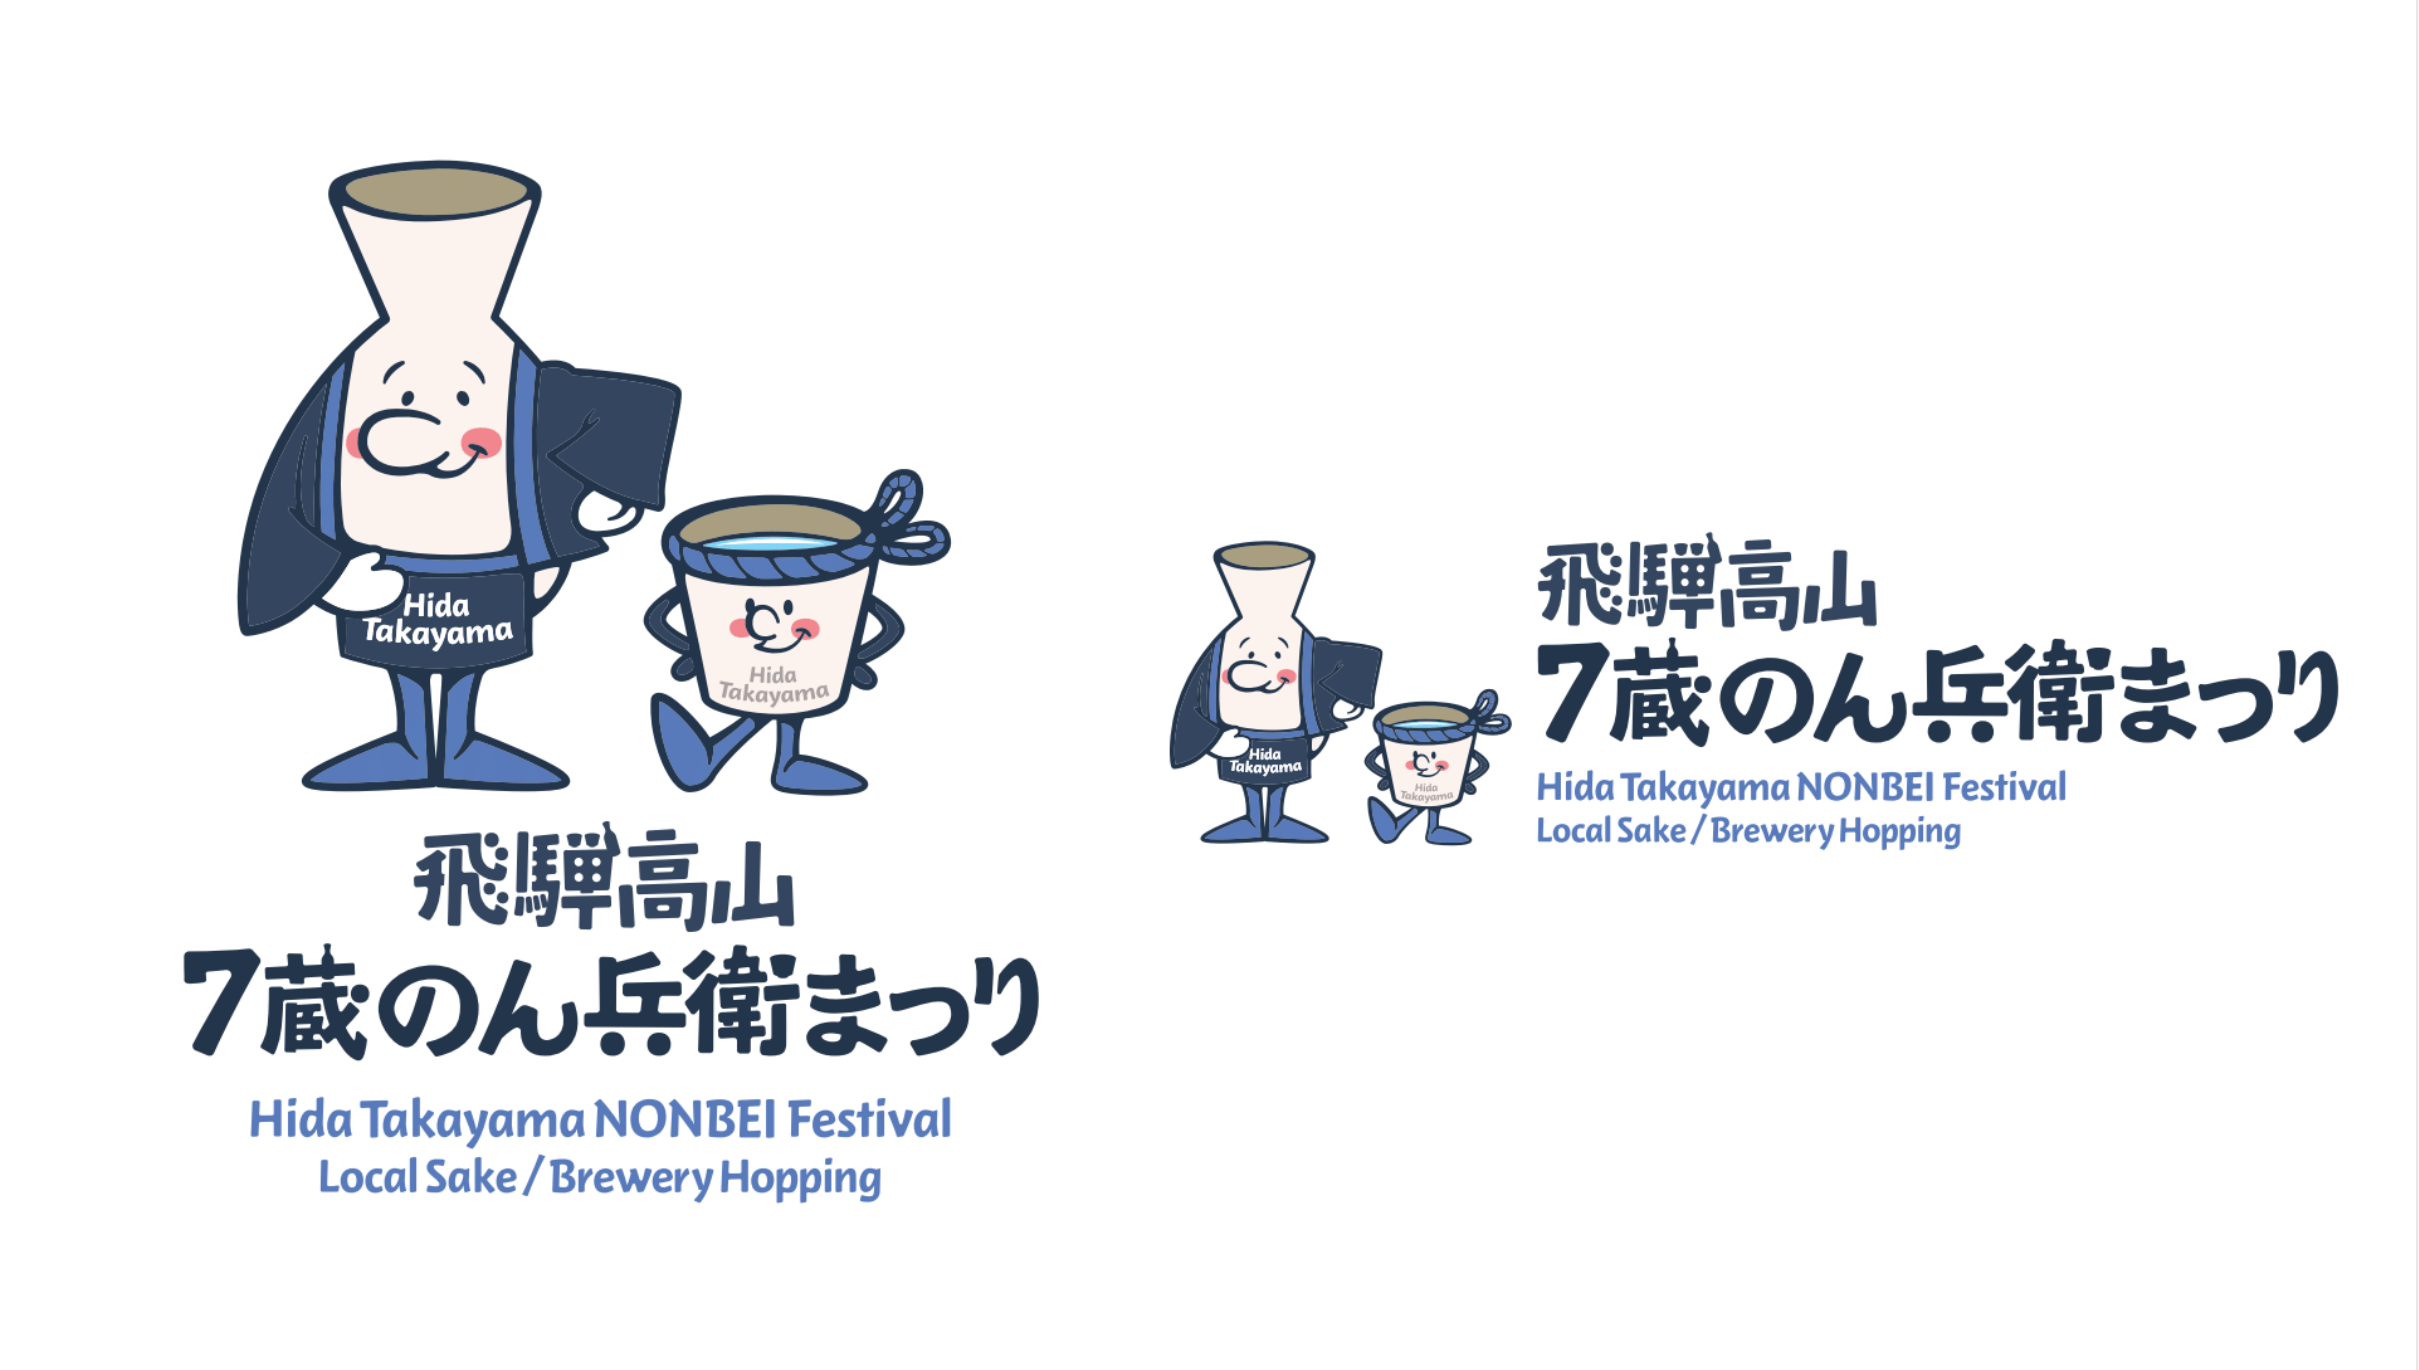 「飛騨高山・7蔵のん兵衛まつり」イベントのキャラクターとロゴタイプをデザイン！